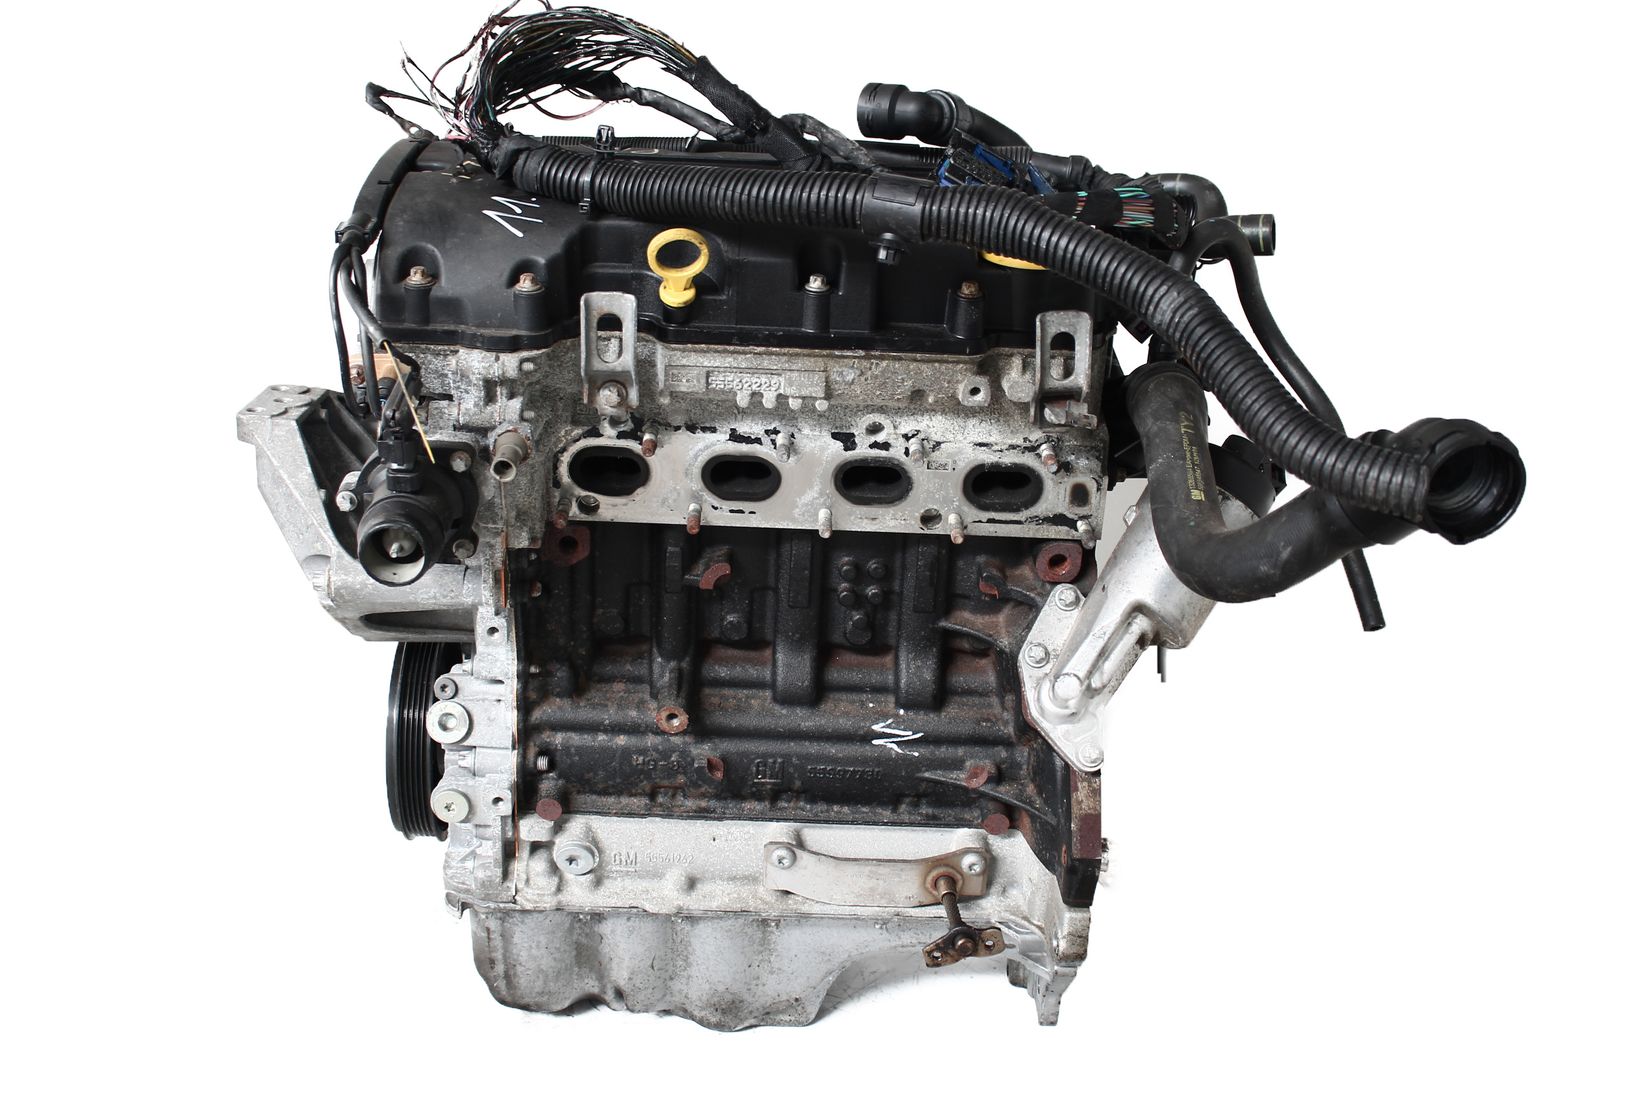 Motor 2015 Opel Astra J Adam 1,4 Benzin B14XER mit Anbauteilen Baugleich A14XER